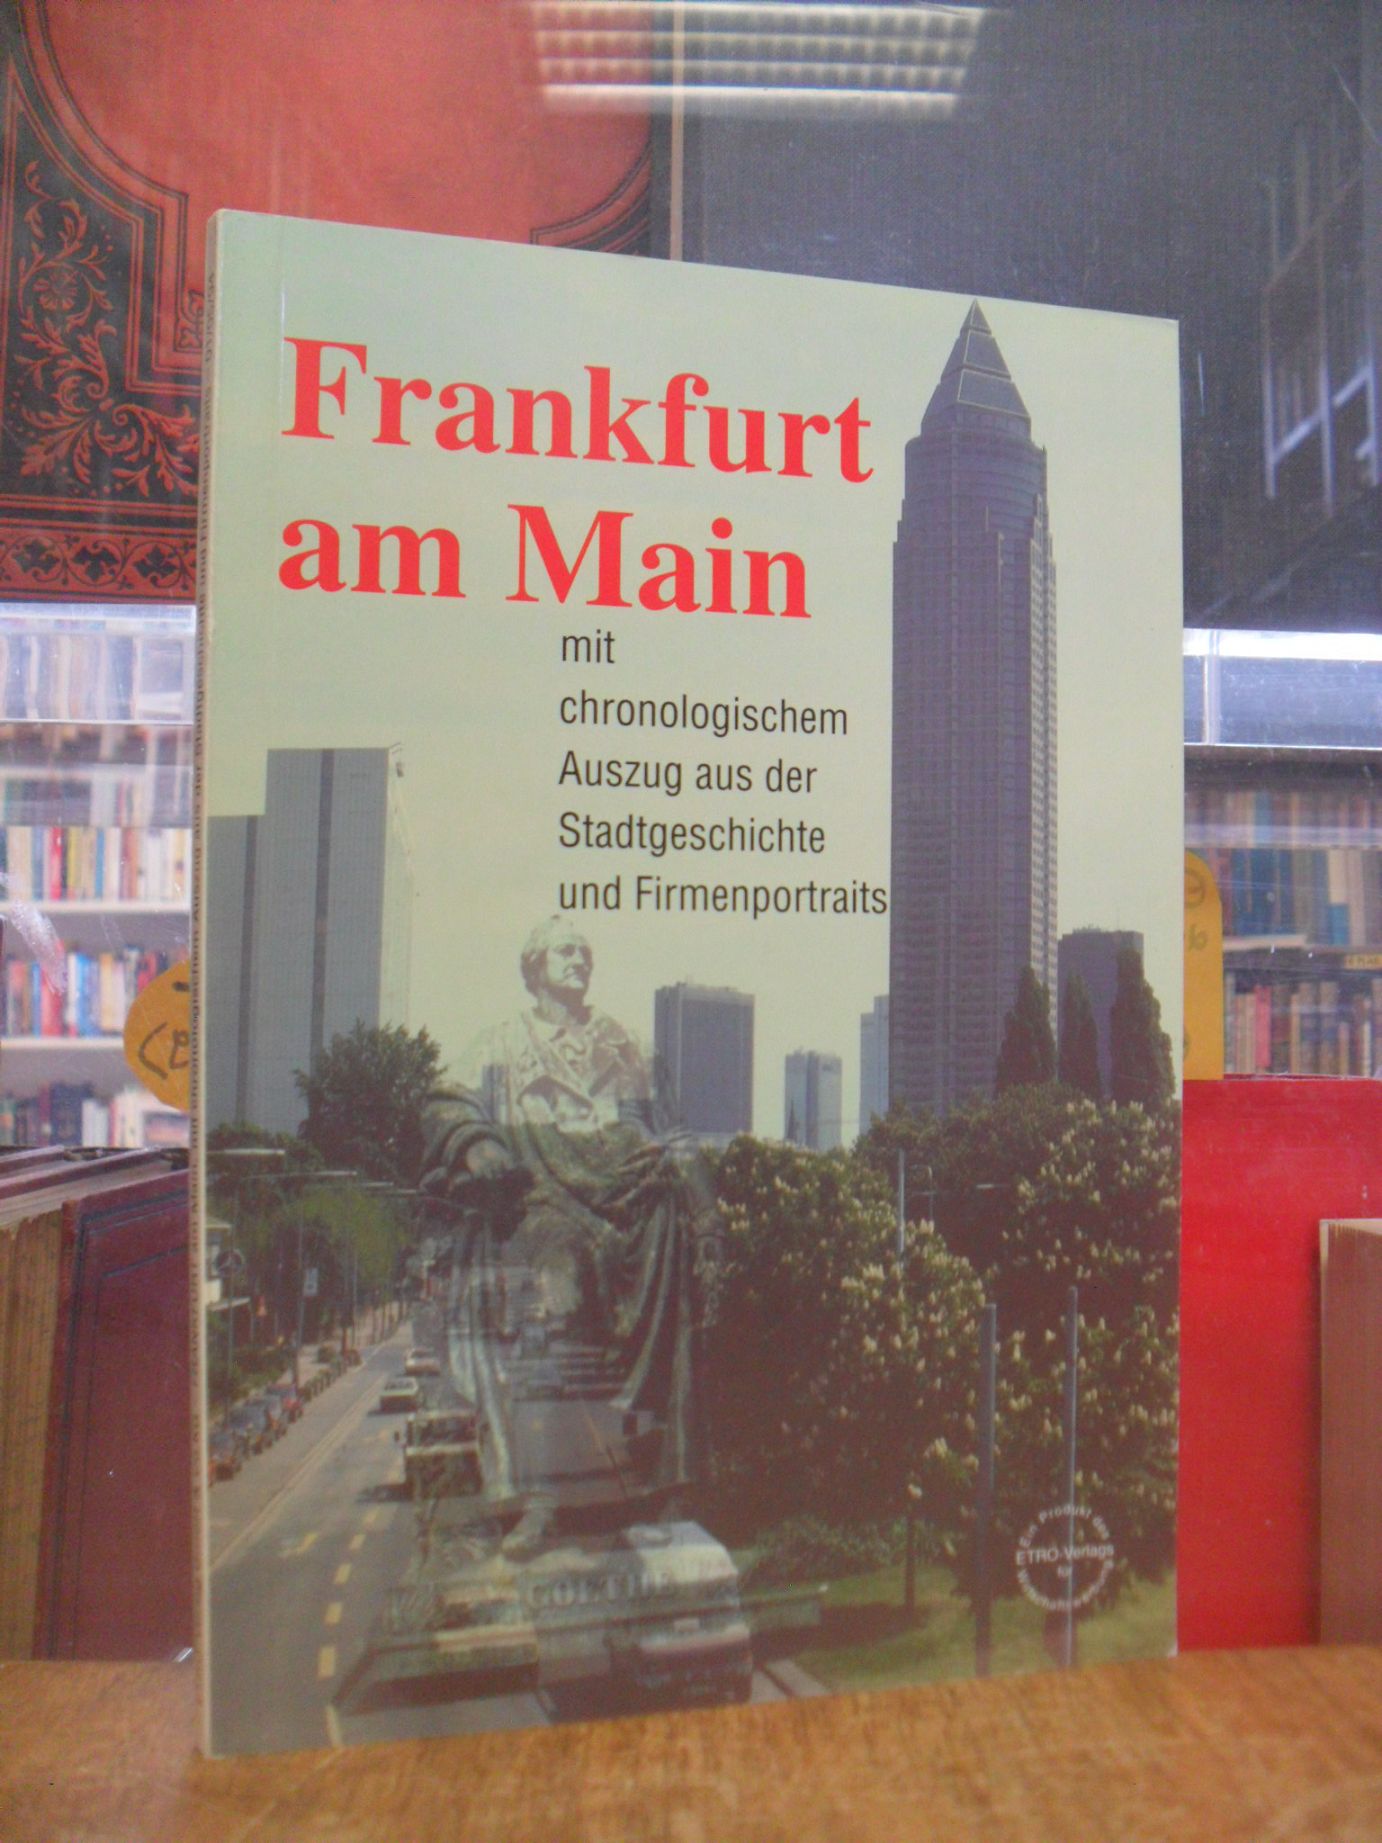 Schembs, Frankfurt am Main mit chronologischem Auszug aus der Stadtgeschichte un